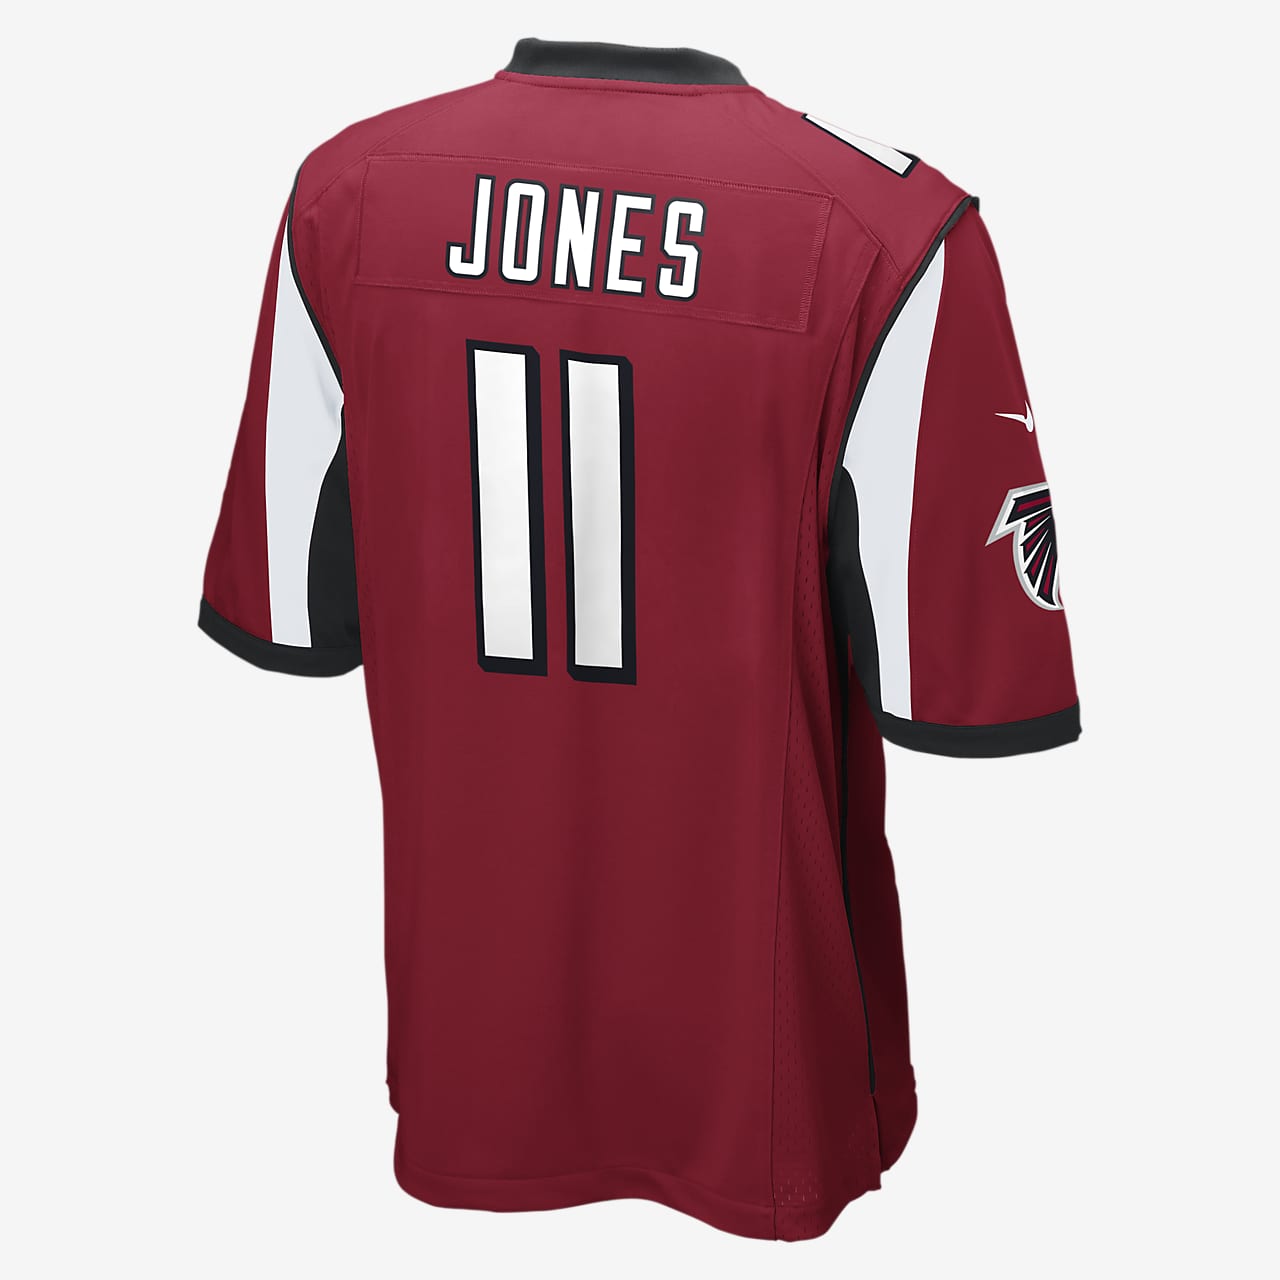 NFL Atlanta Falcons (Julio Jones) Men's 